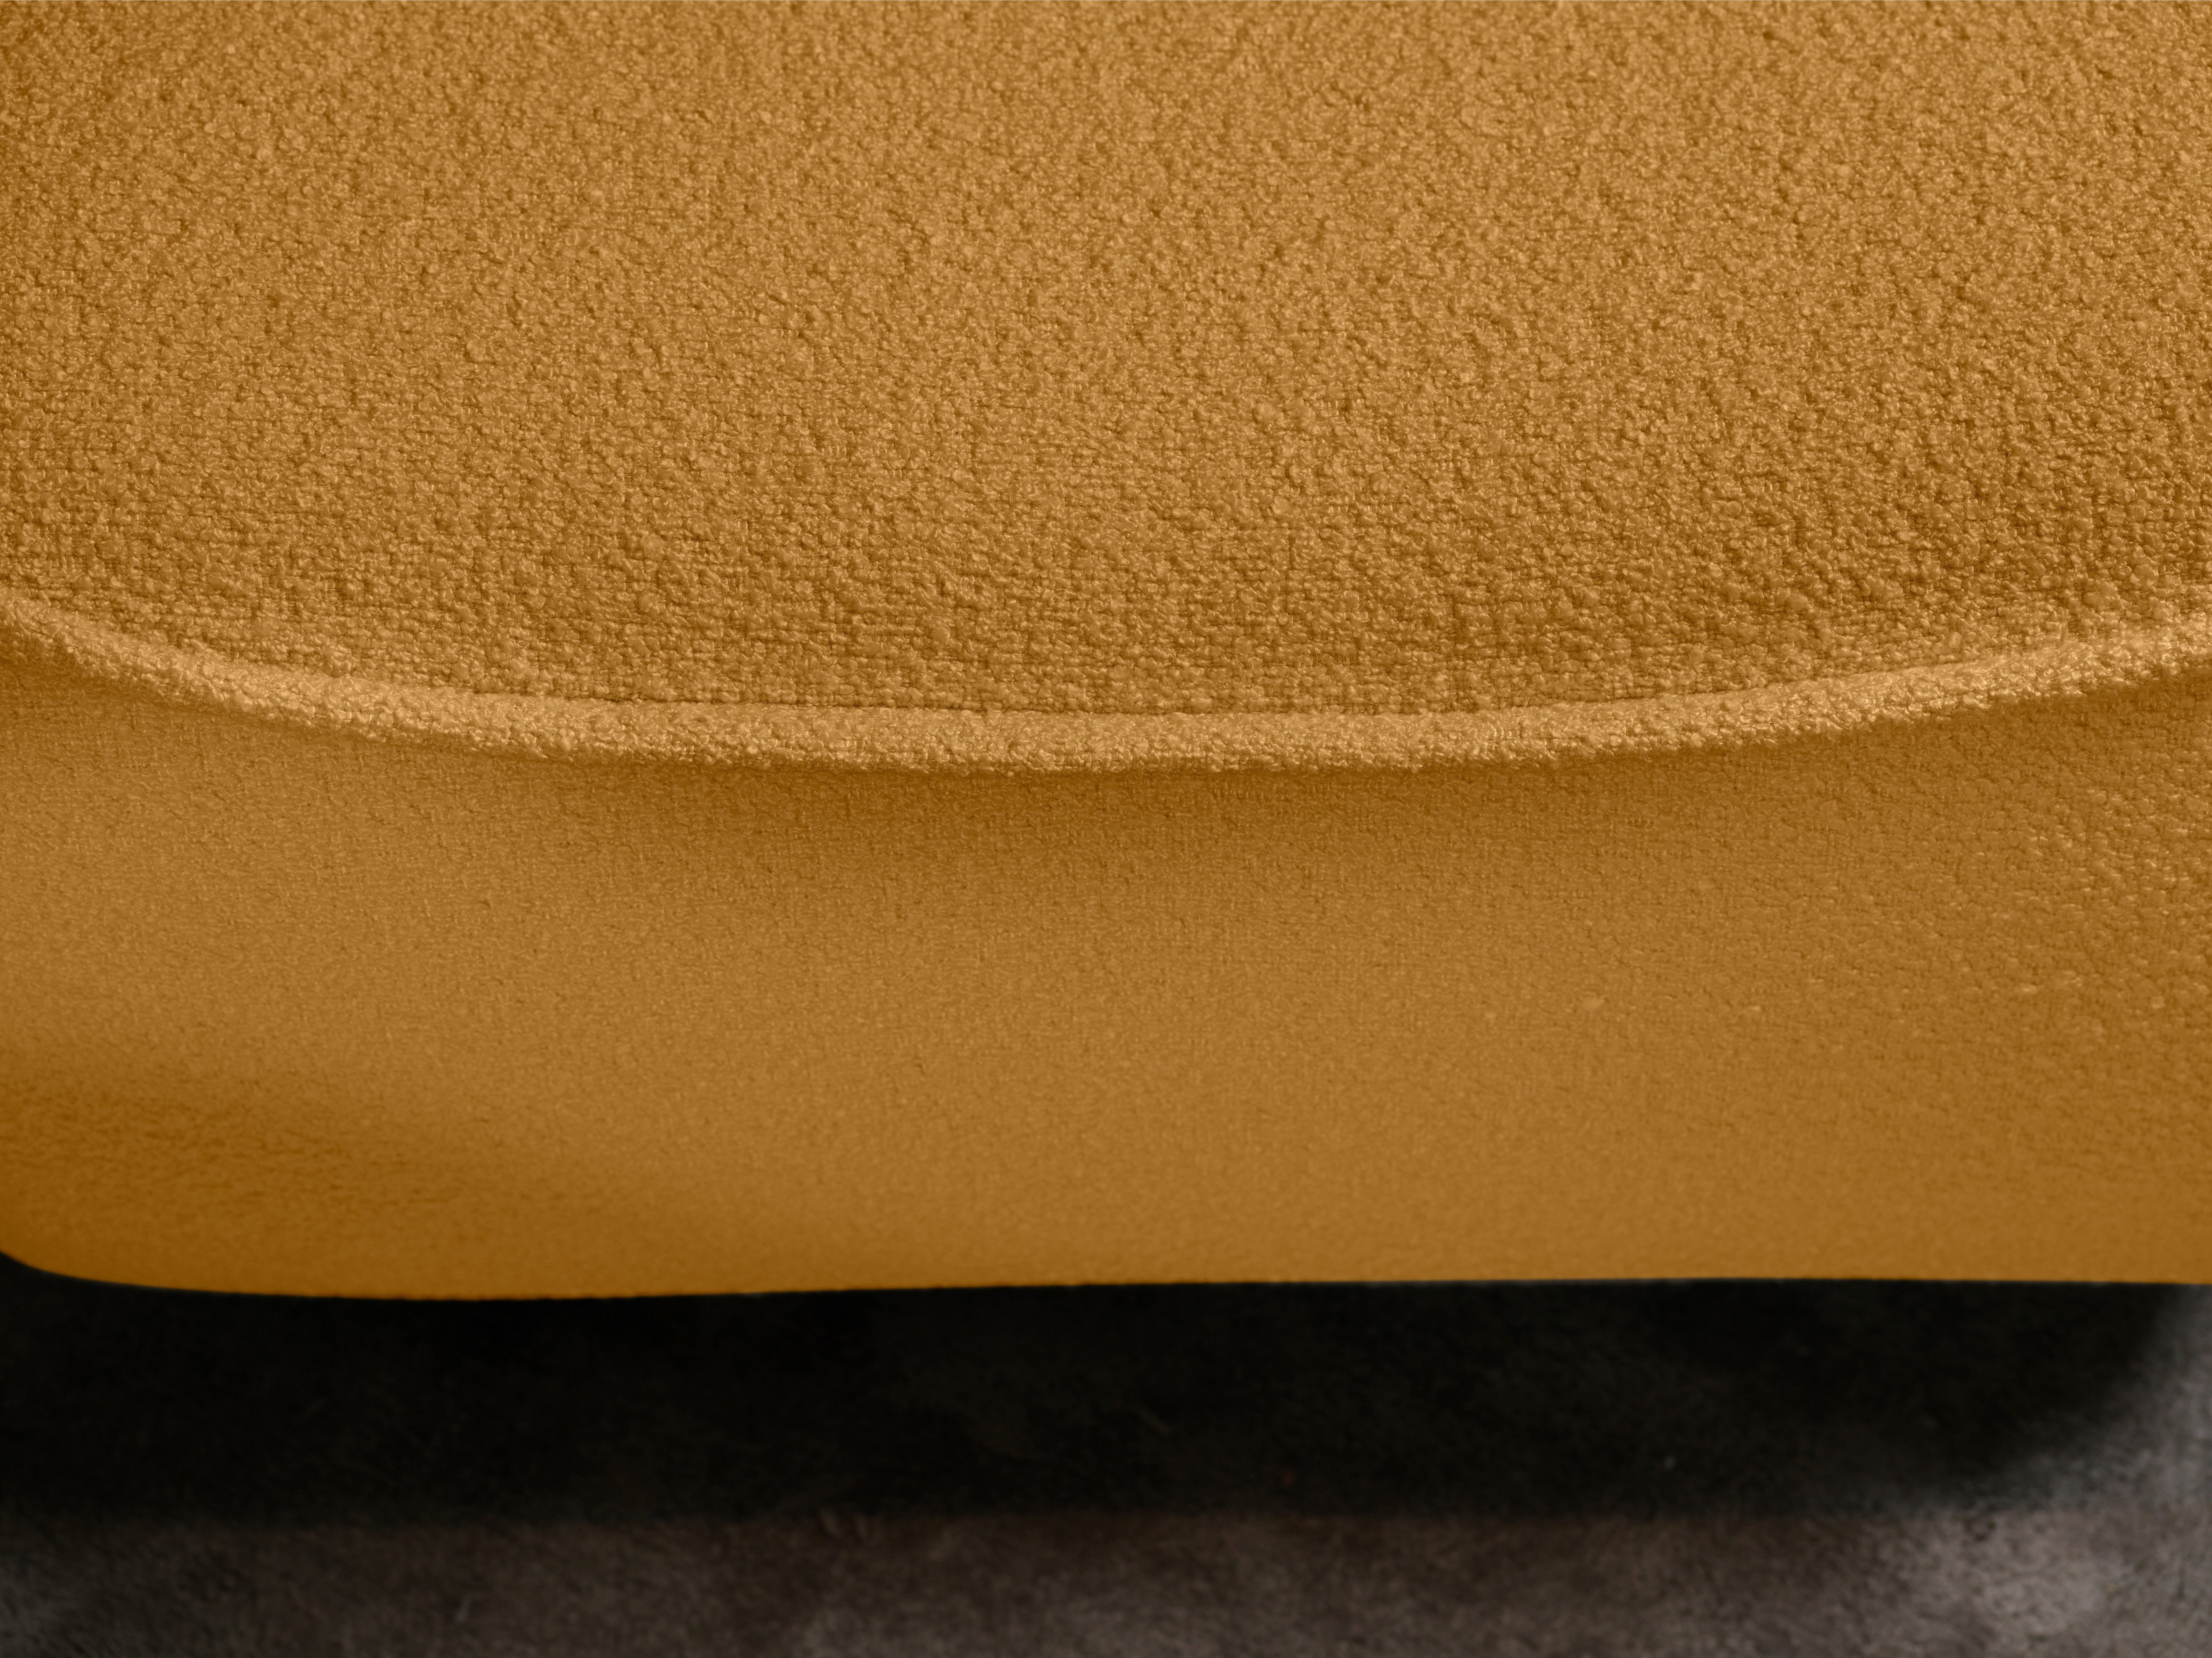 Spezialnaht, furninova Gorm, und Loungesessel im attraktiver Design skandinavischen Drehfunktion mustard